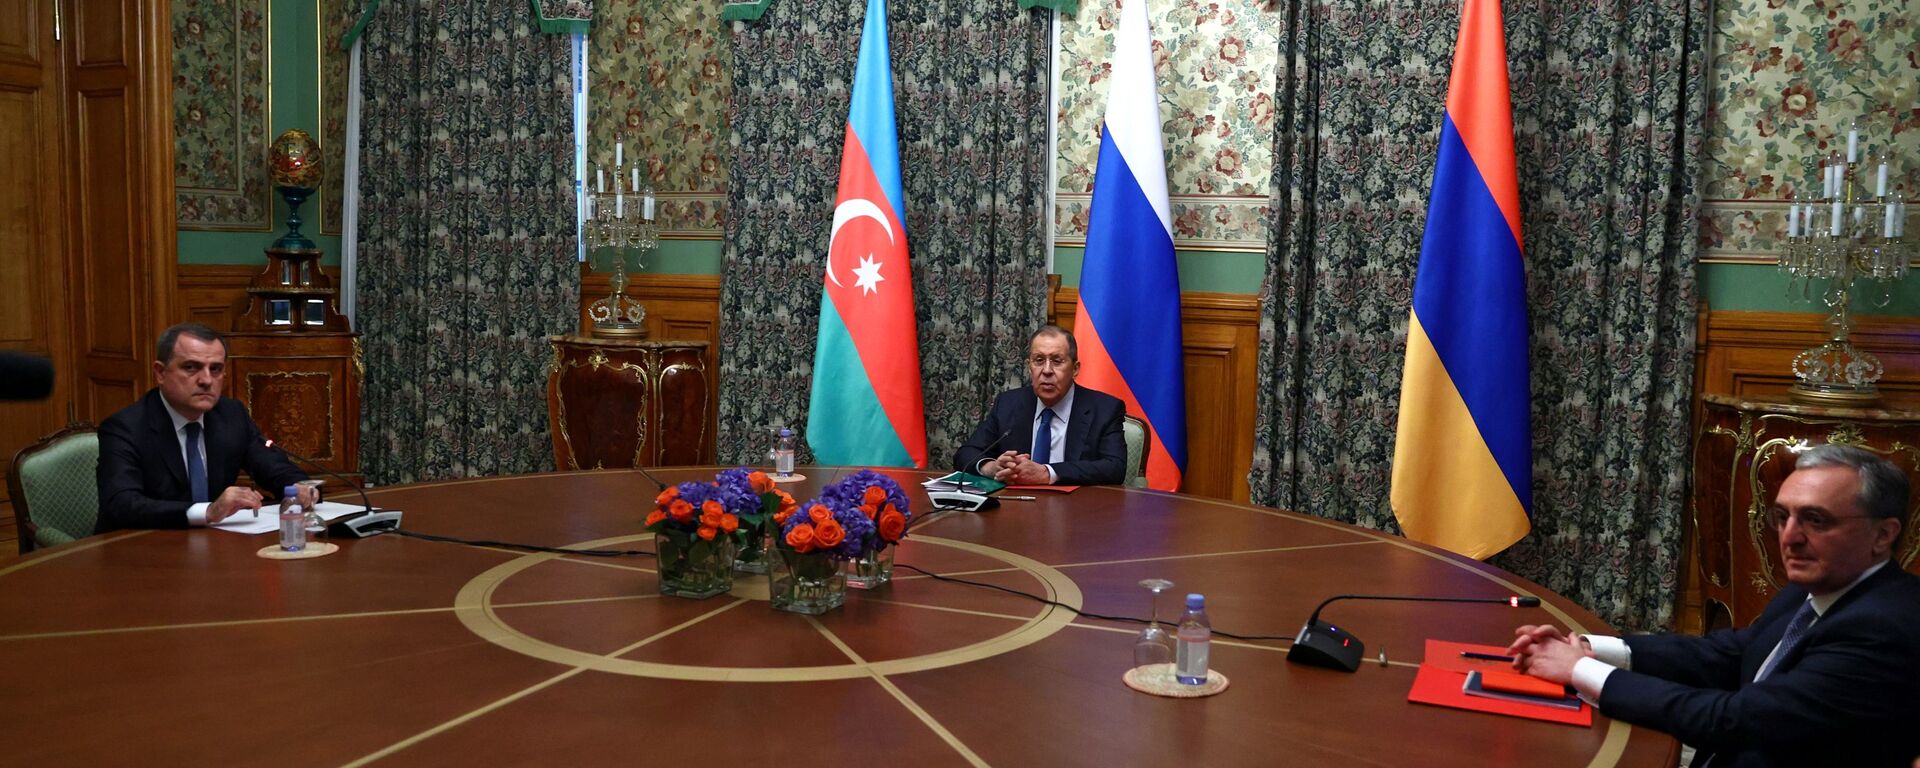 Las negociaciones entre los cancilleres de Rusia, Armenia y Azerbaiyán sobre Karabaj  - Sputnik Mundo, 1920, 18.05.2021